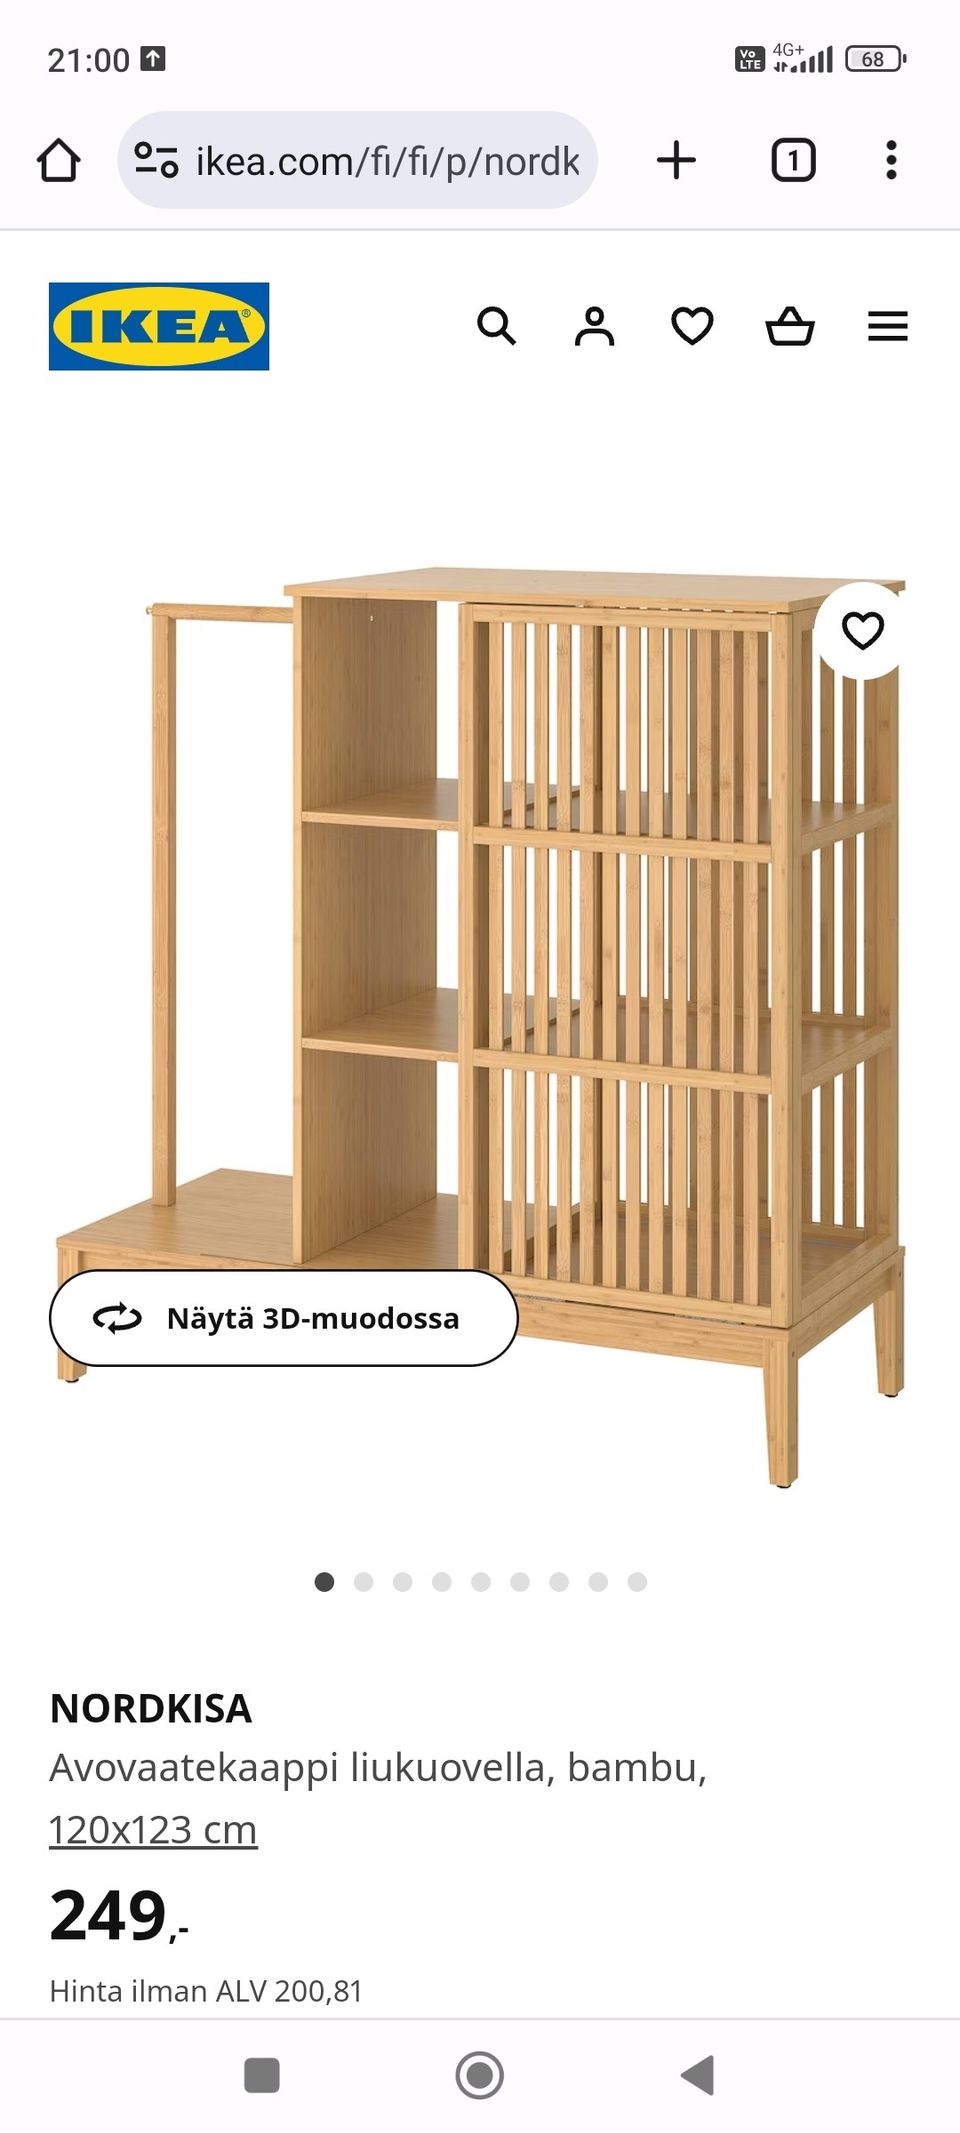 Ikea Nordkisa